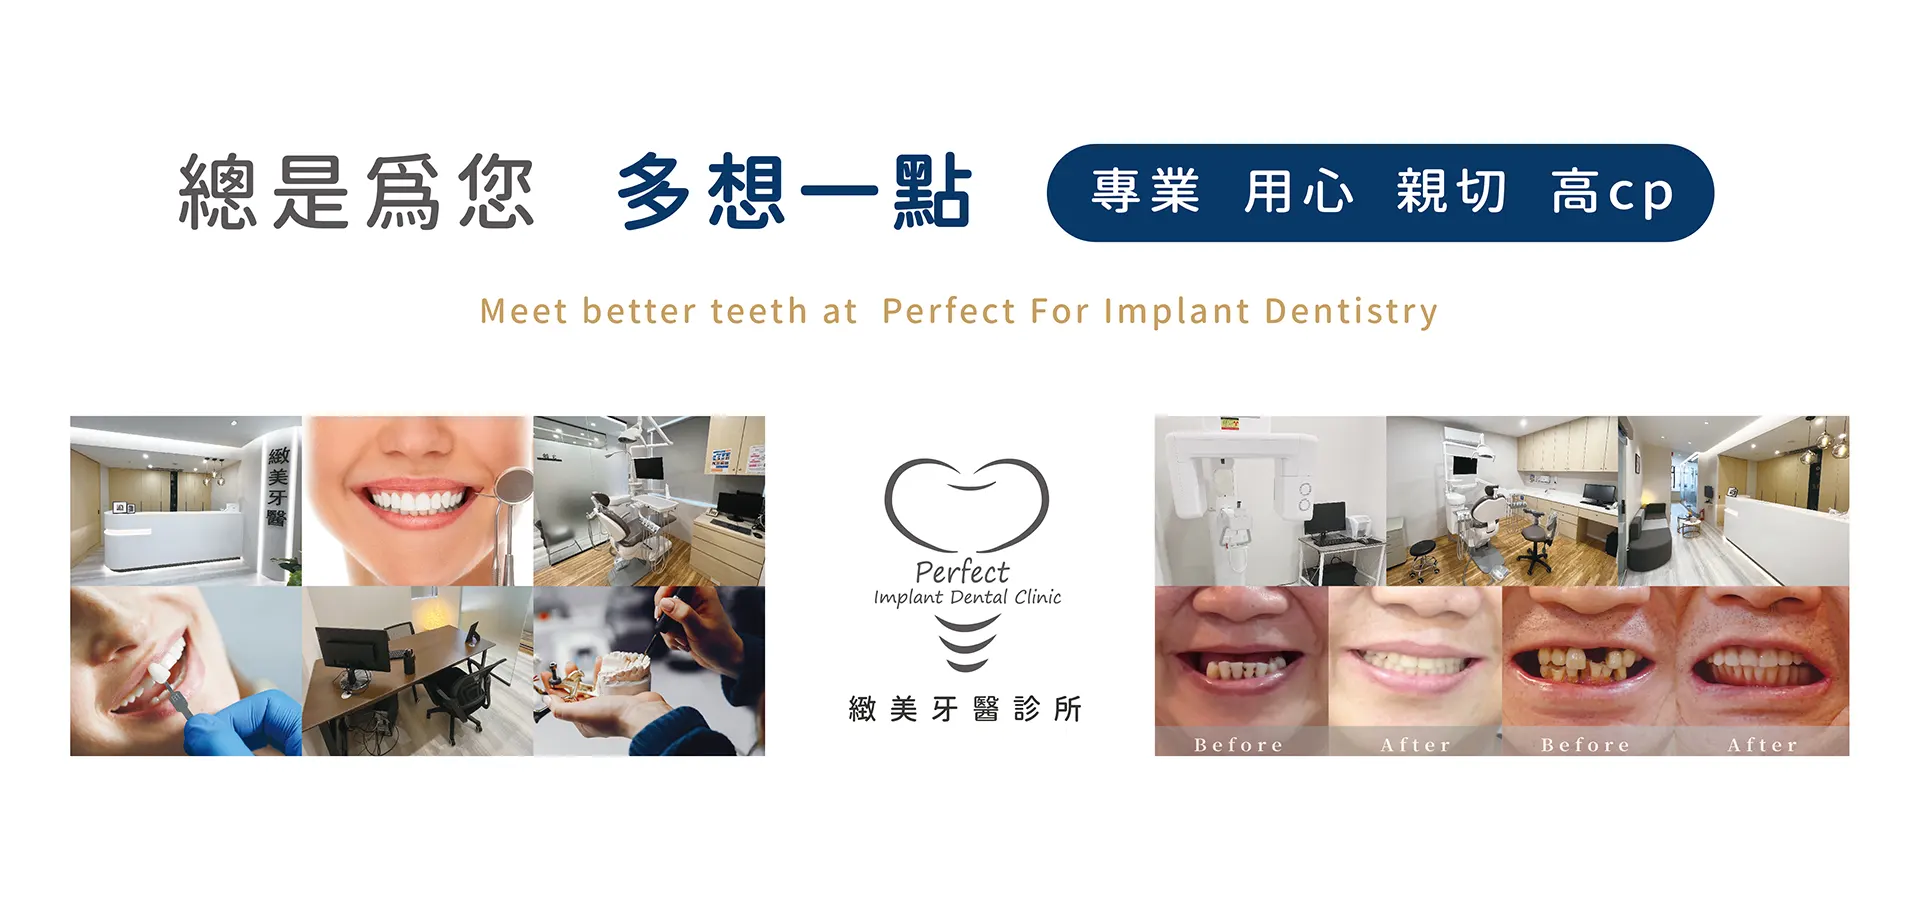 緻美牙醫診所 perfect implant dental clinic 專業 用心 親切 高cp